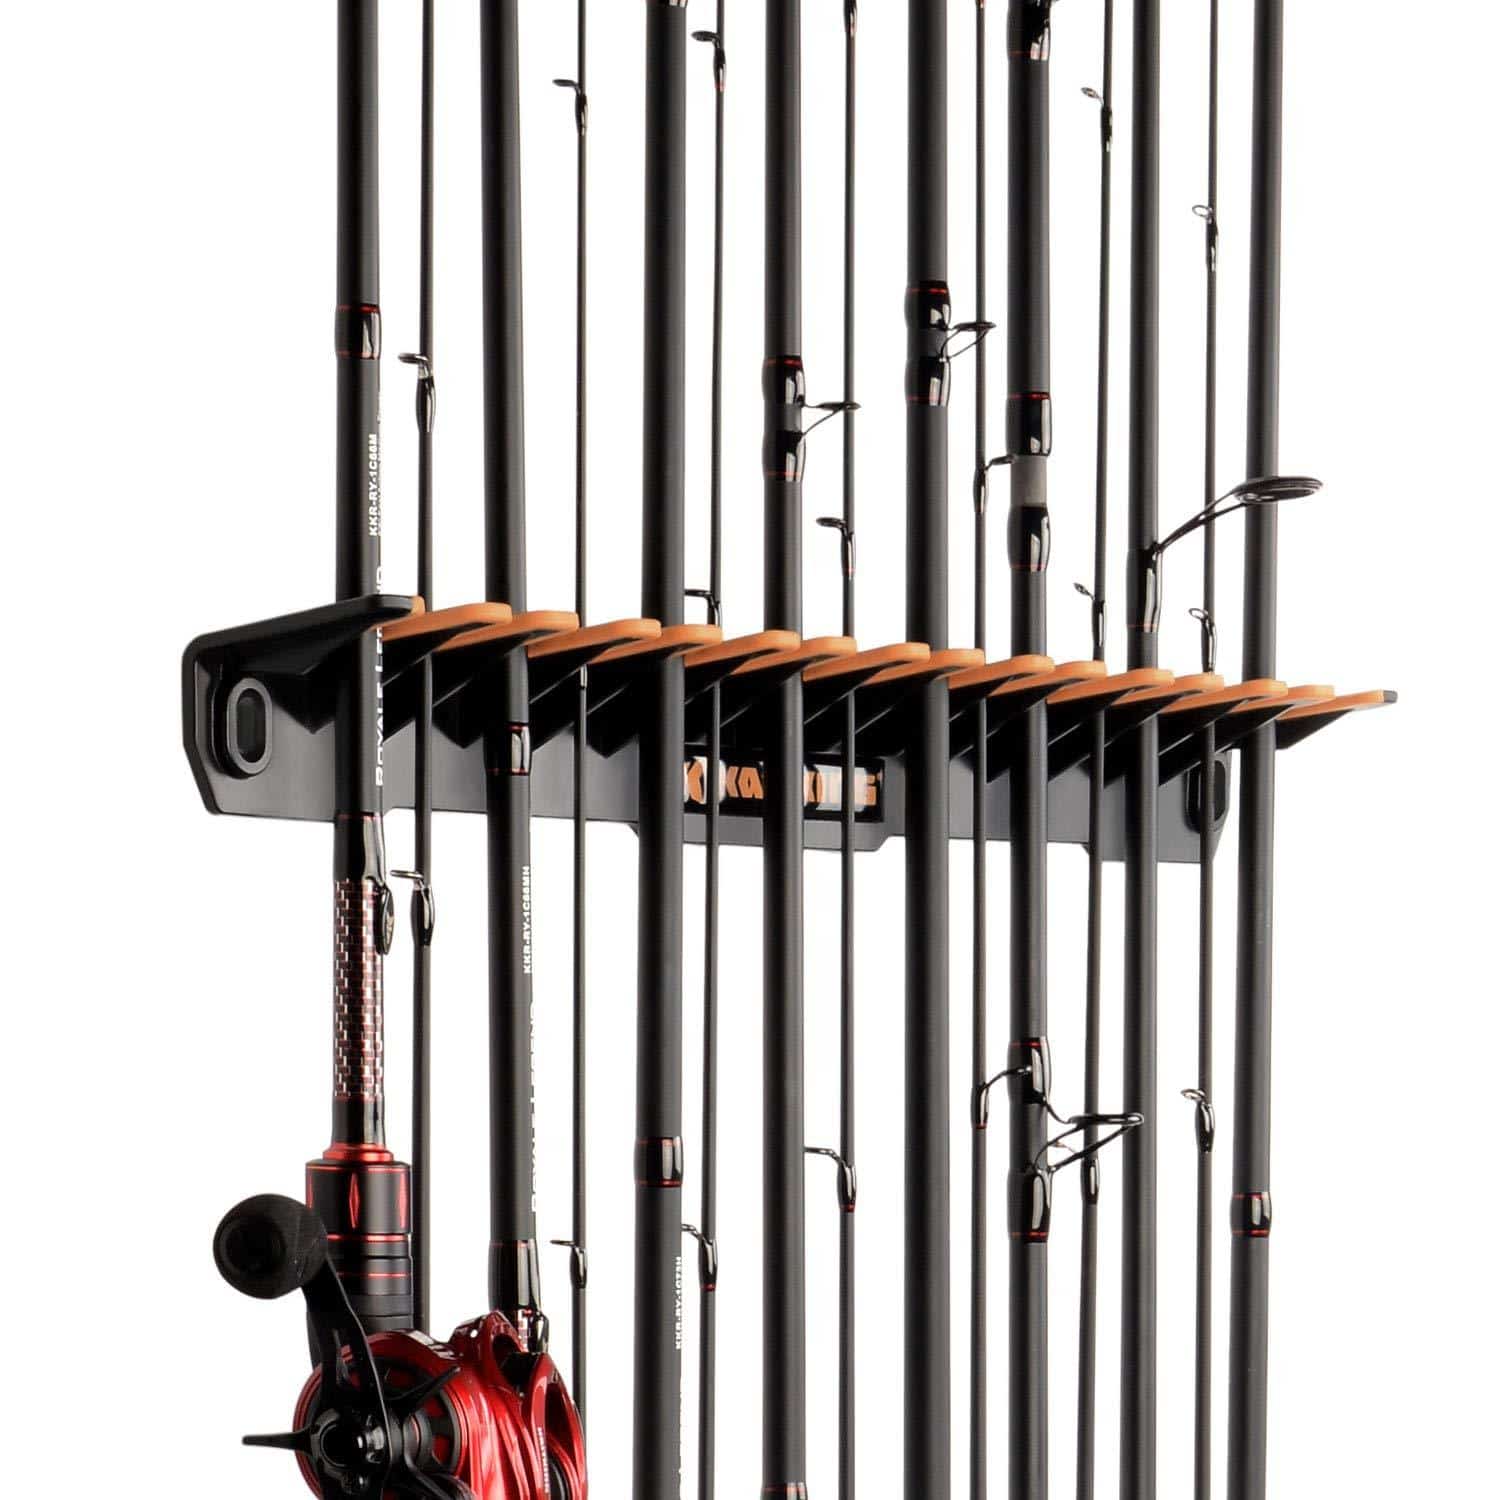 Rush Creek Creations Fishing Rod Holder Vs KastKing V15 Vertical Rod Rack 